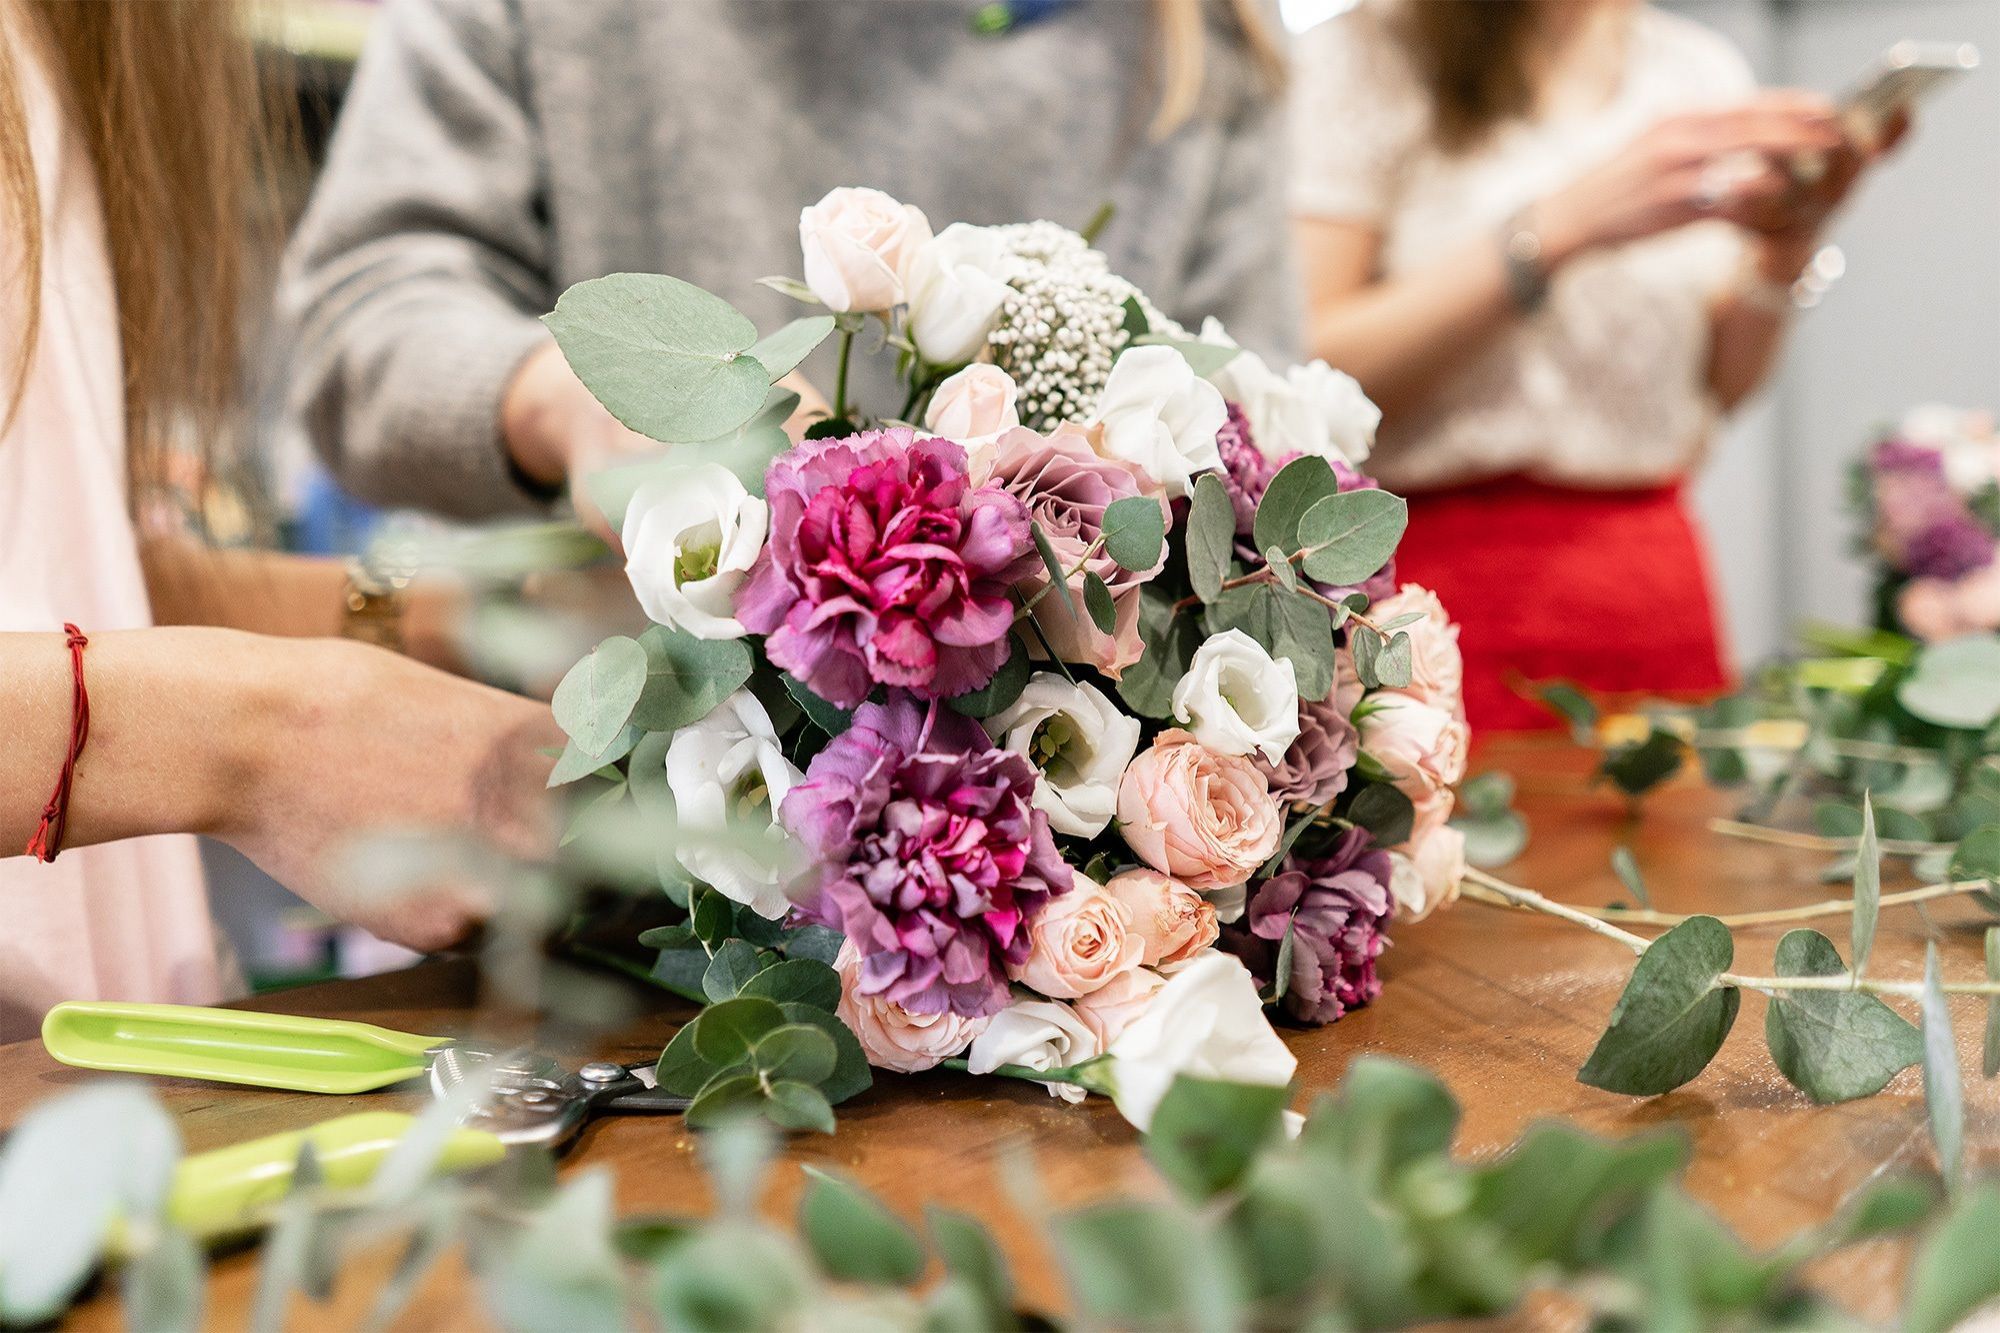 Eine Frau bindet einen Strauß Blumen auf einem Tisch zusammen